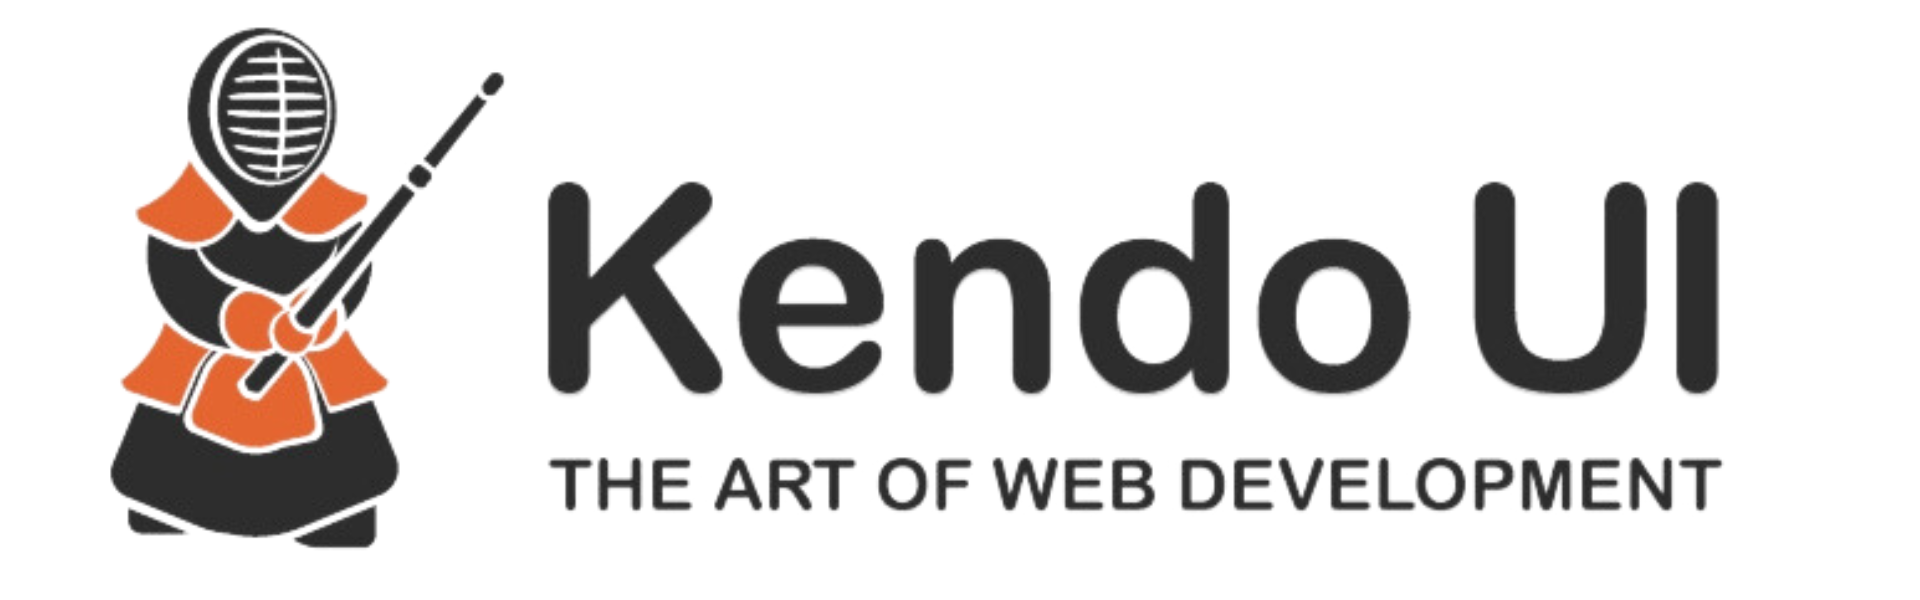 KendoUI_logo